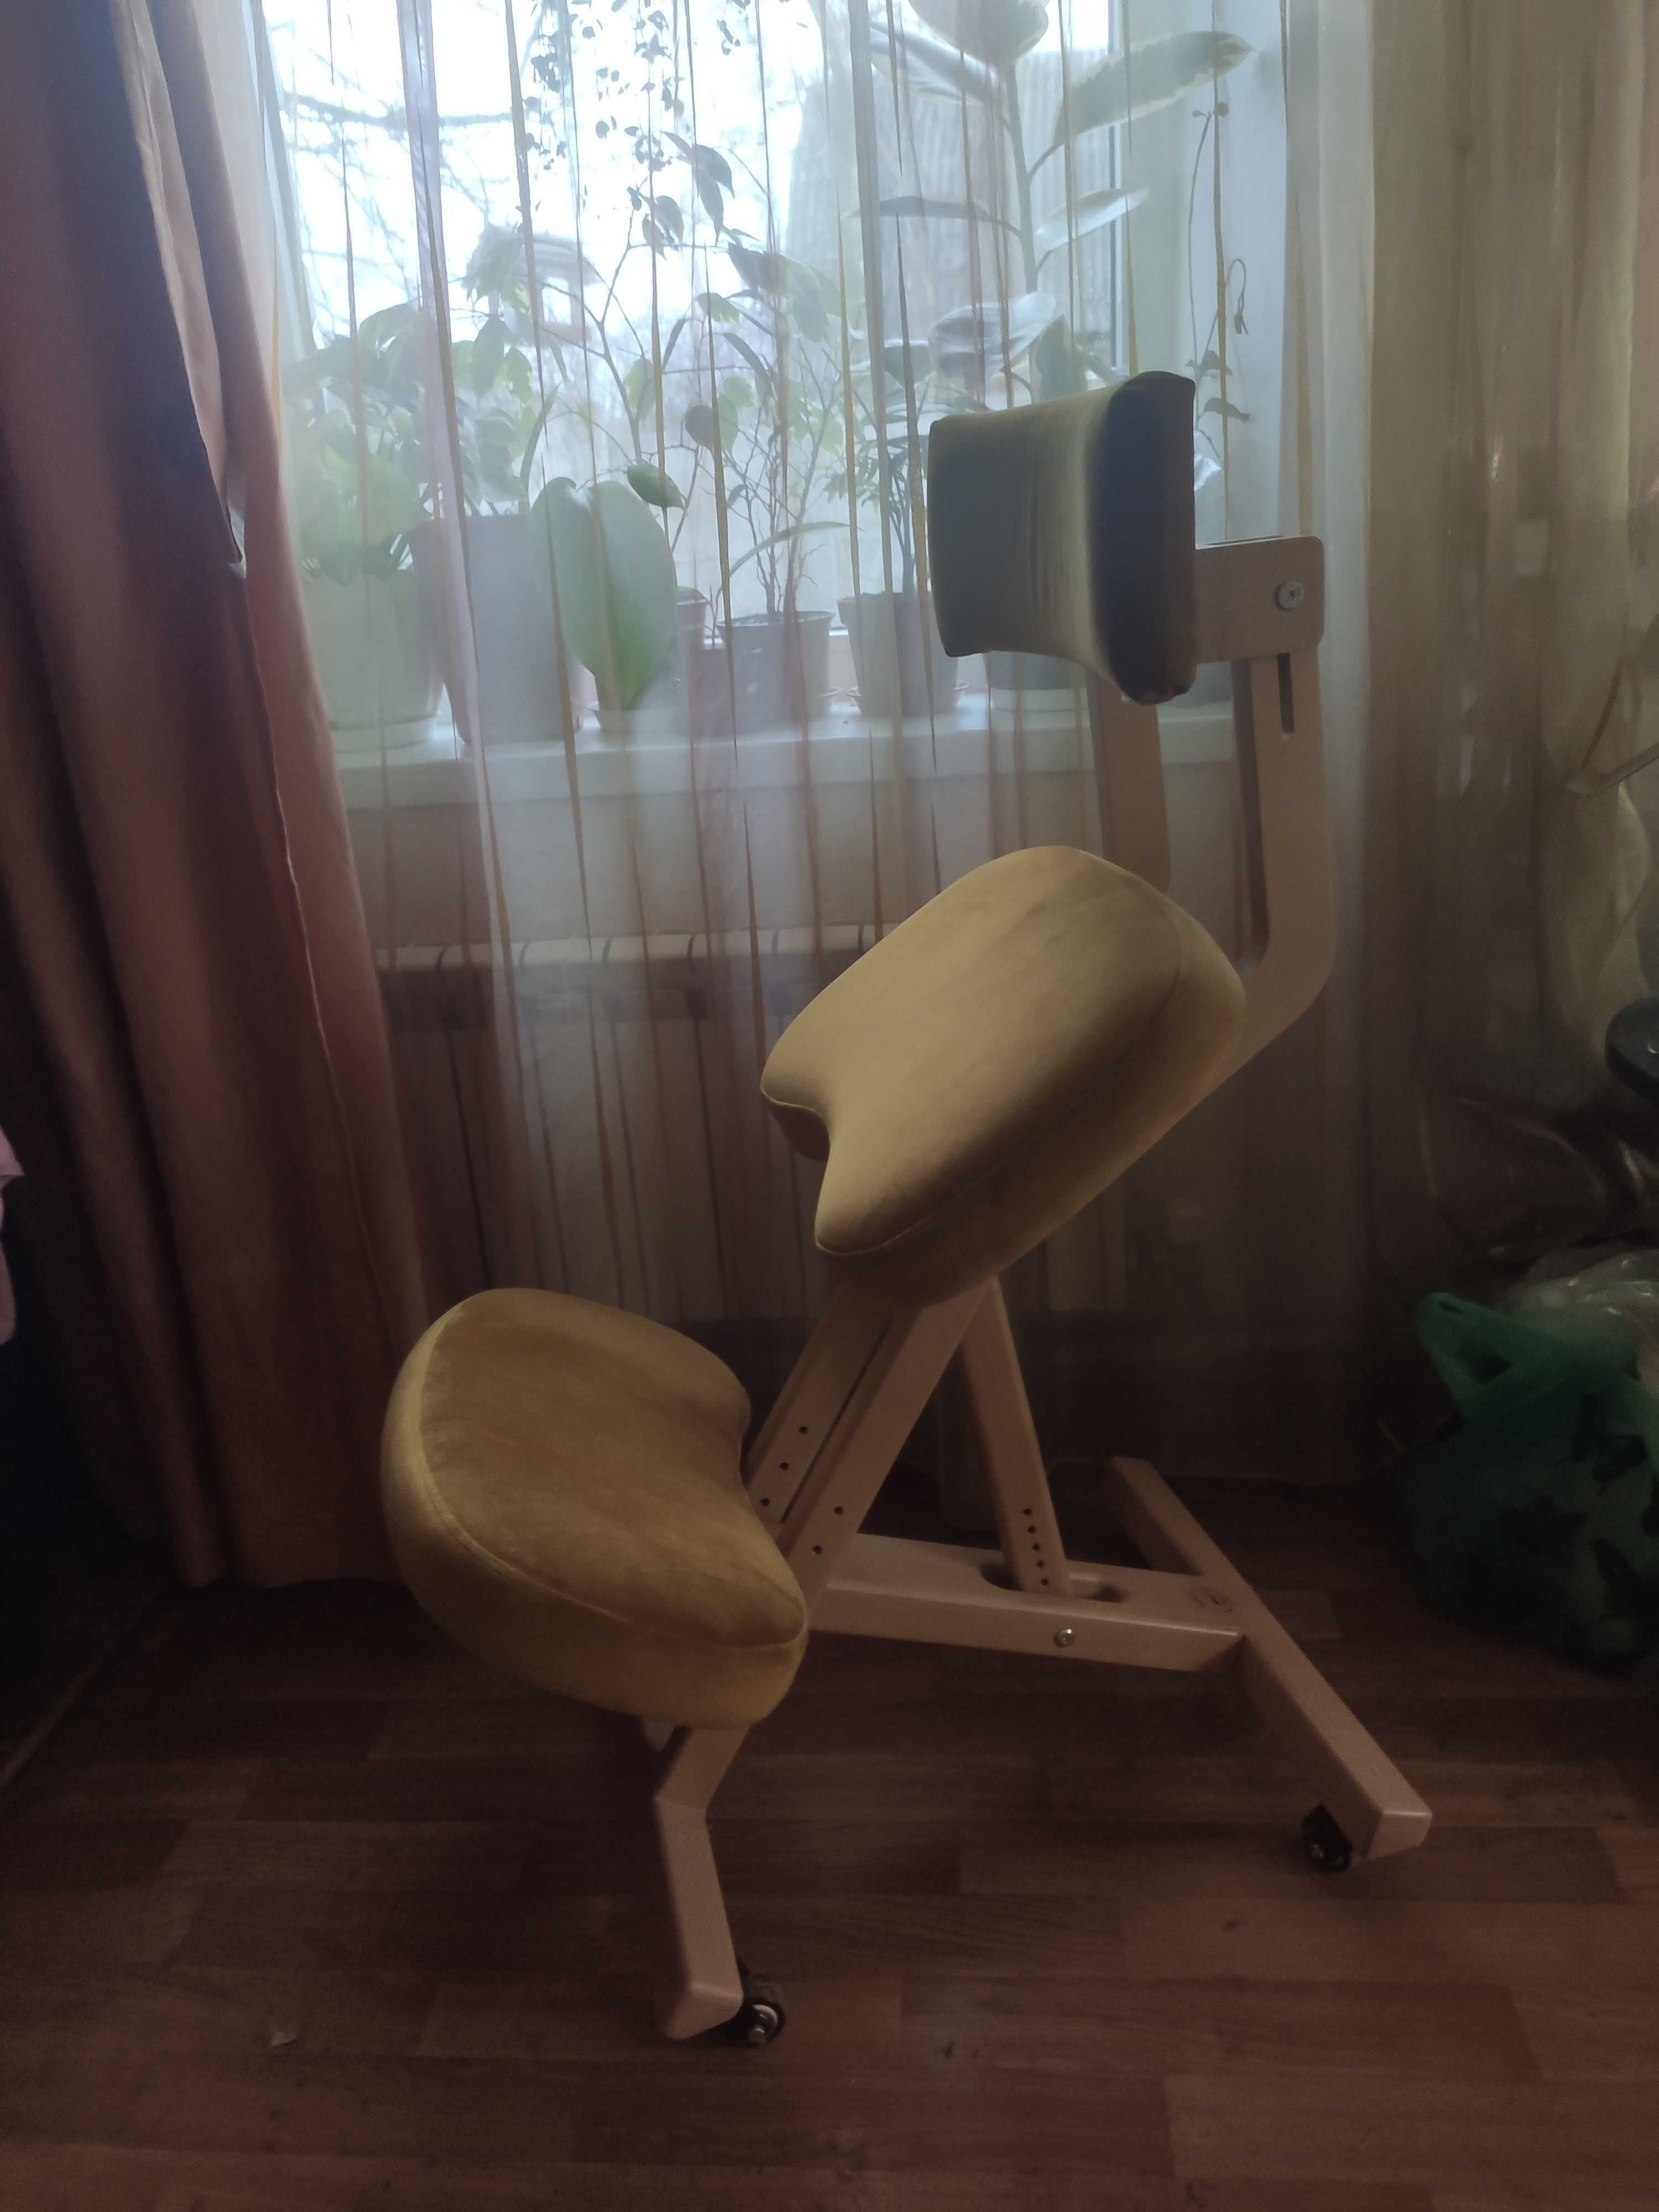 Коленный стул с регулировками высоты